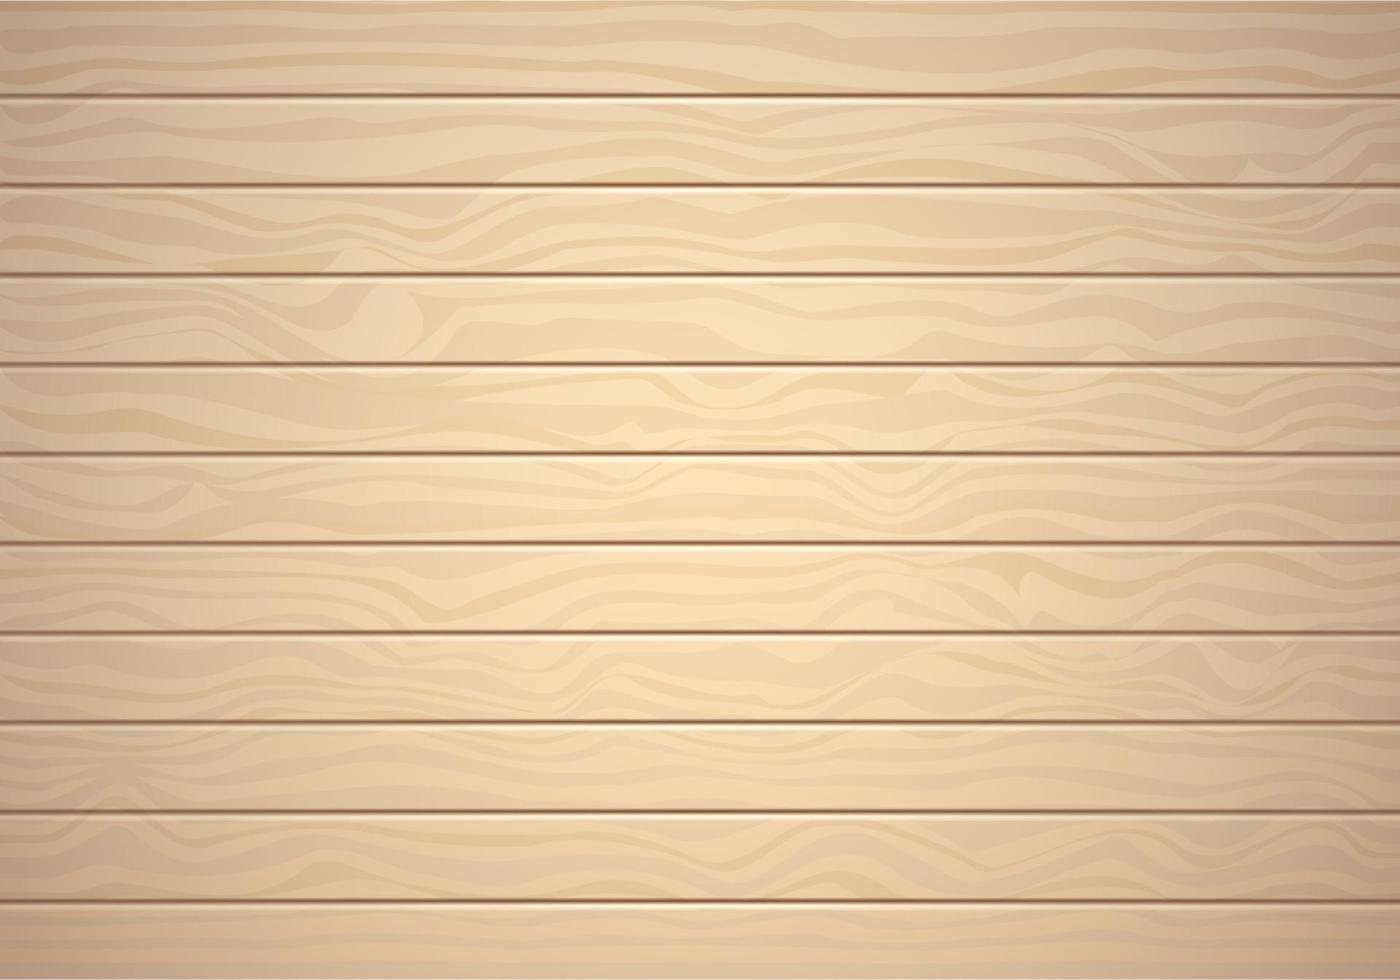 Vektor-Holz-Textur. Hintergrund altes Panel. Retro-Grunge-Vintage-Holz-Textur, Vektor-Hintergrund. vertikale Streifen. vektor